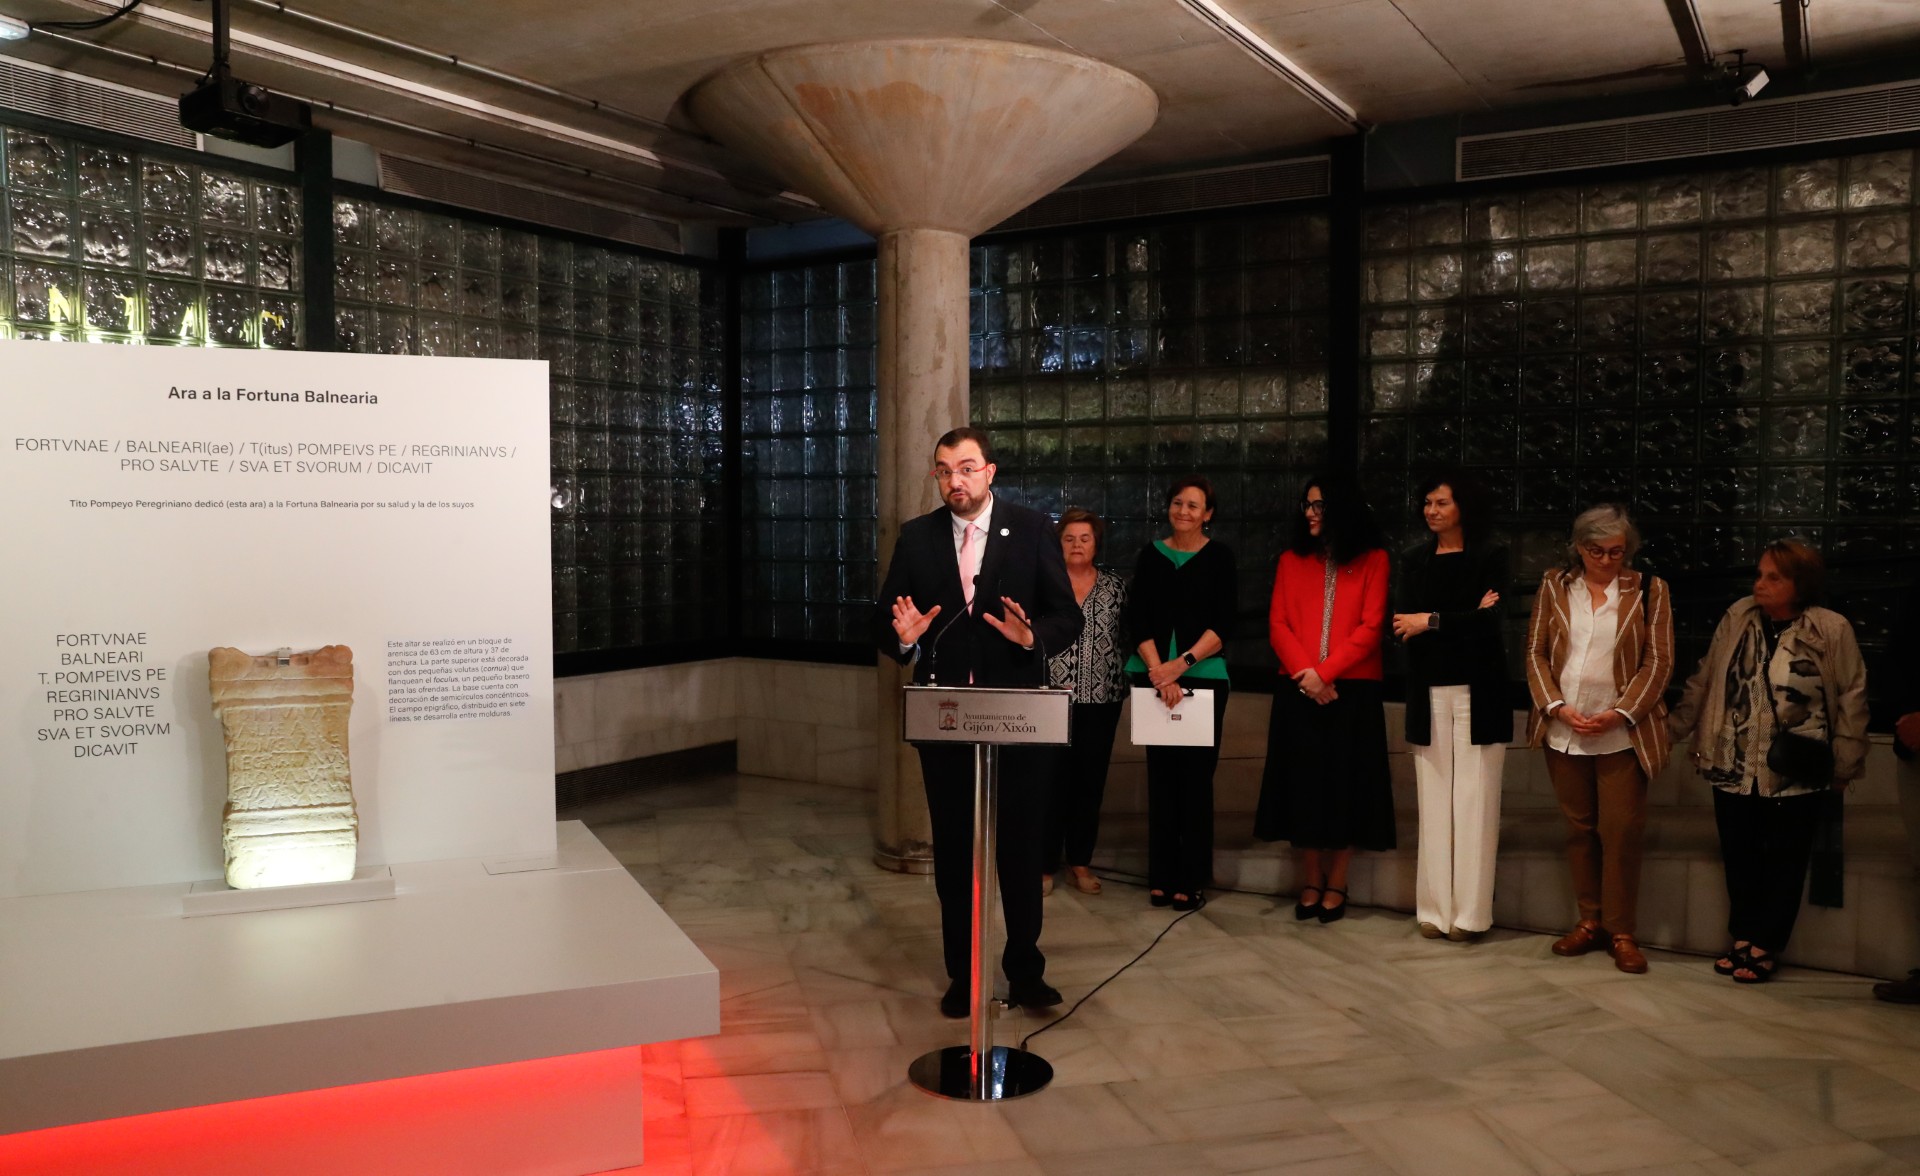 Imagen - El presidente celebra que la Fortuna Balnearia regrese “a su casa” y anuncia la intención de que la pieza permanezca en Gijón/Xixón